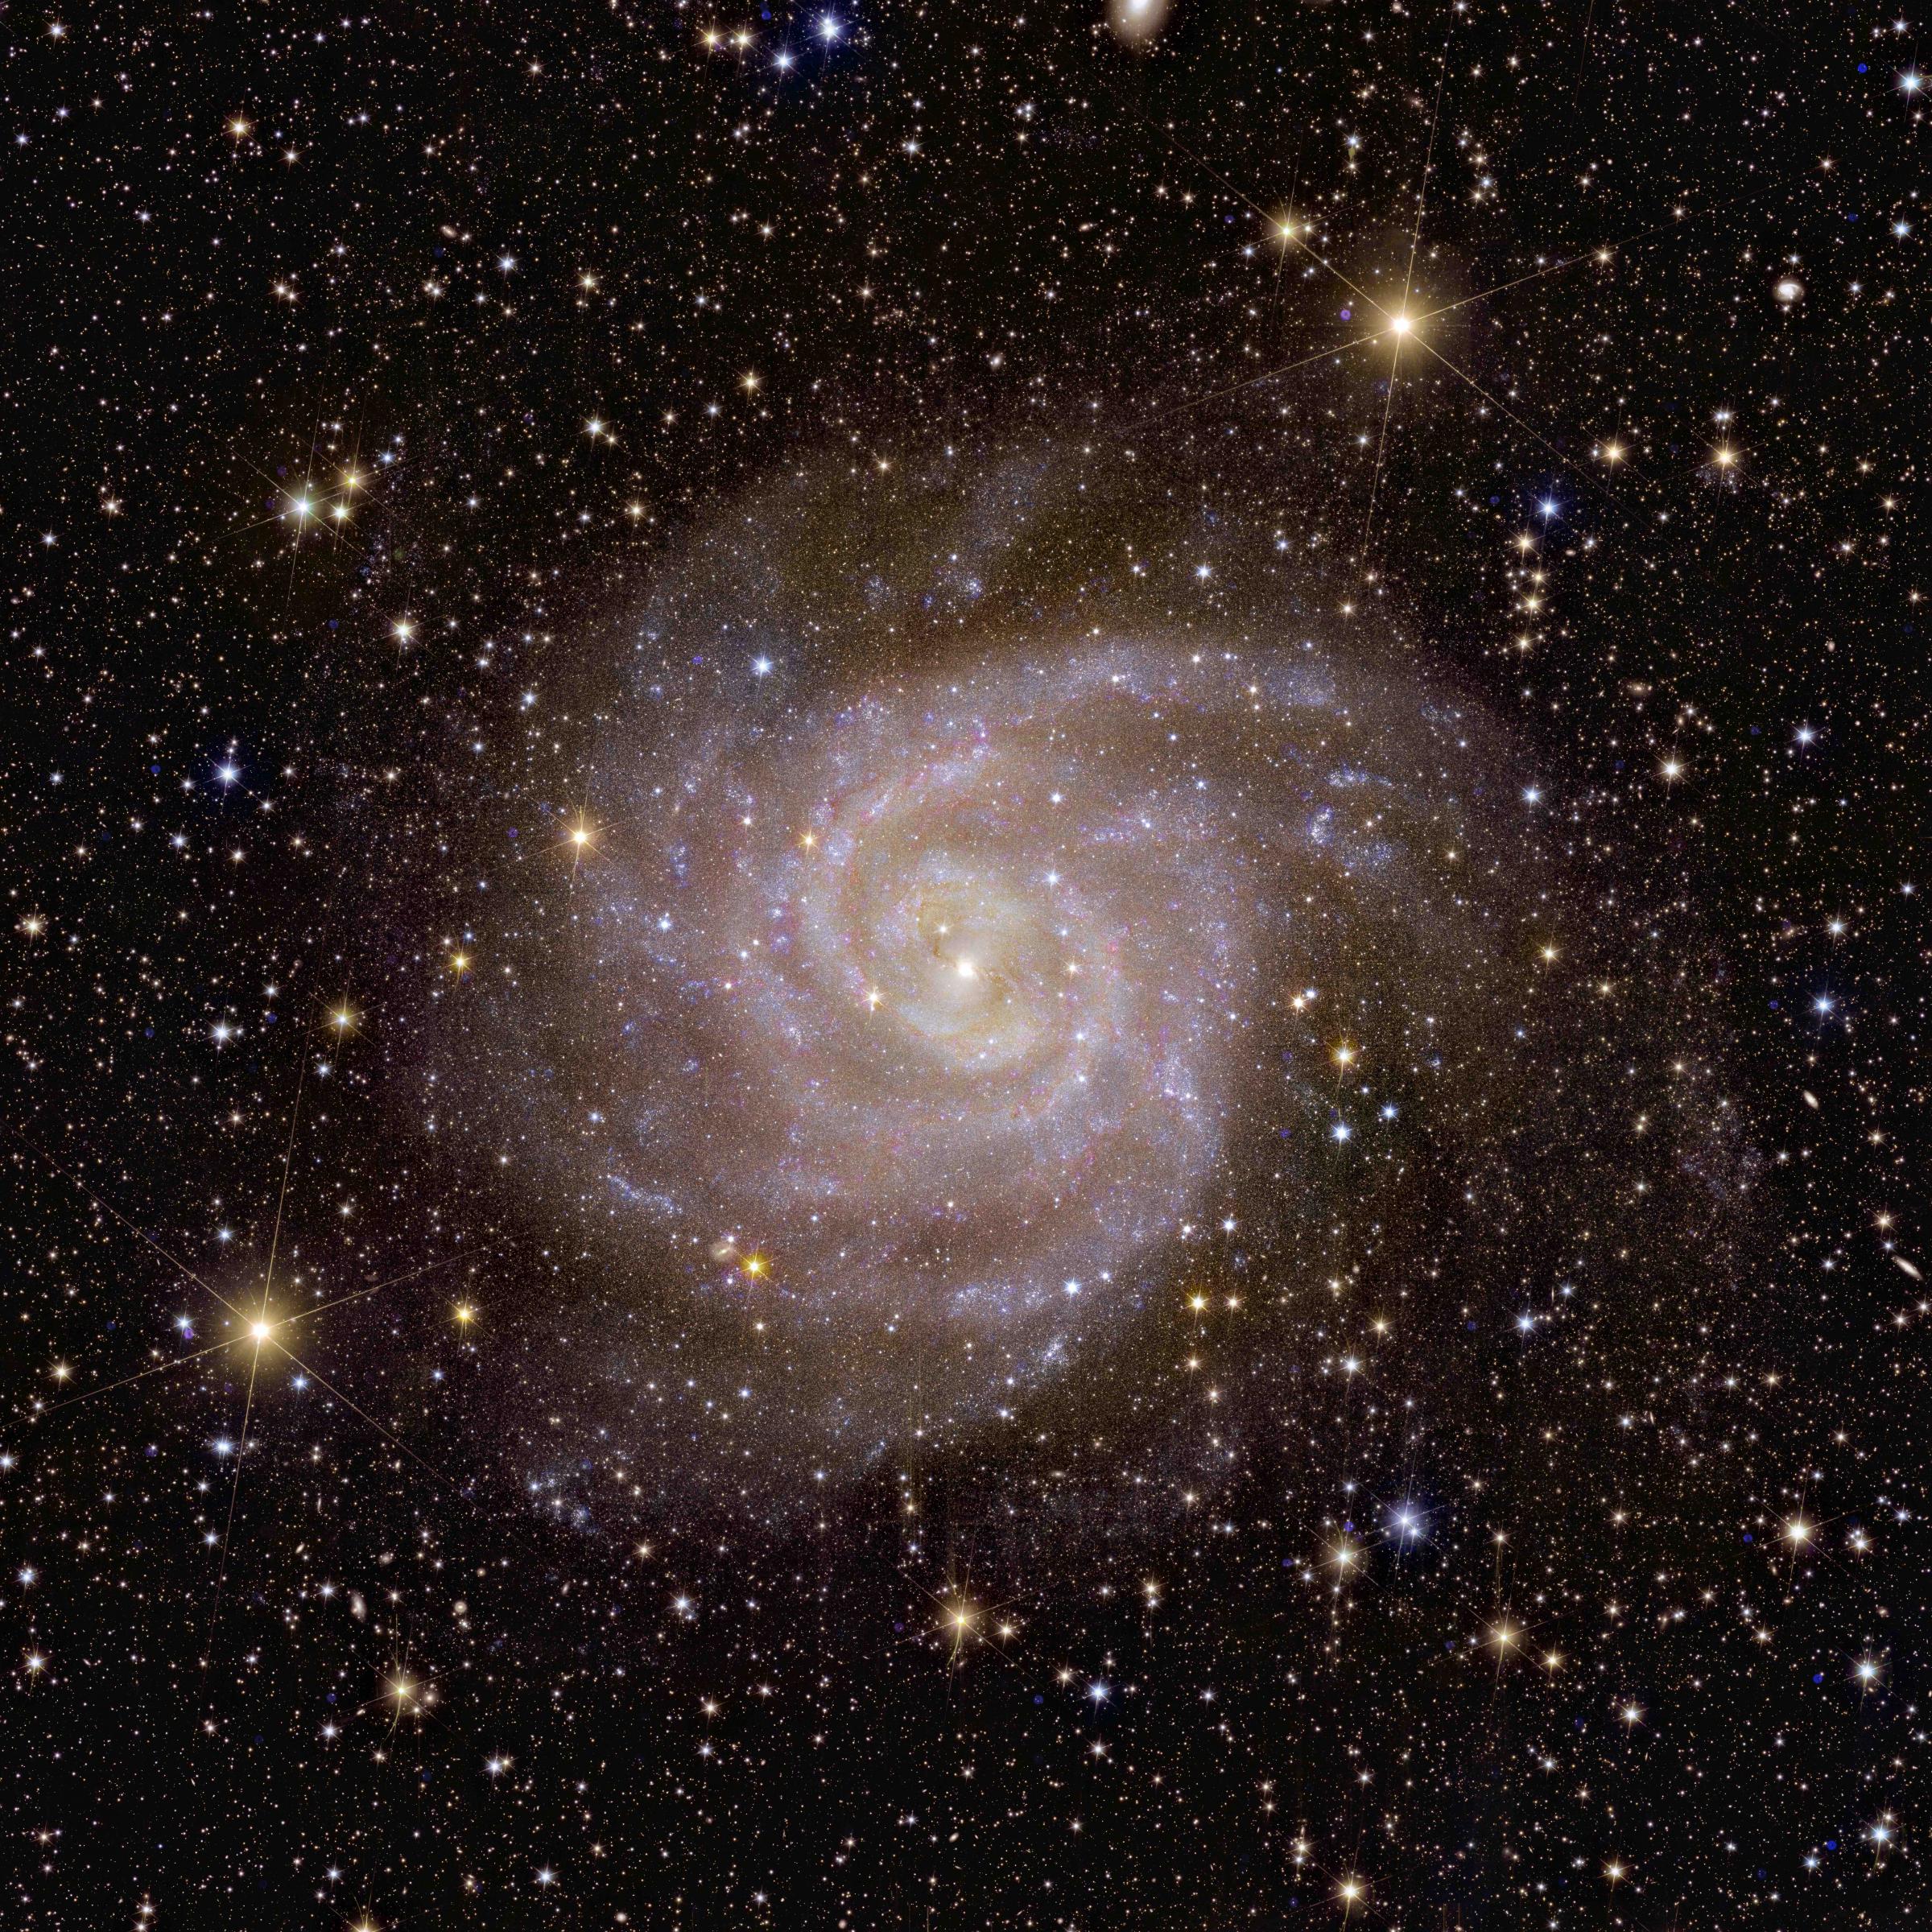 Vor dunklem Hintergrund zeichnet sich eine Spirale mit hellen Punkten ab, die Spiralgalaxie IC 342.